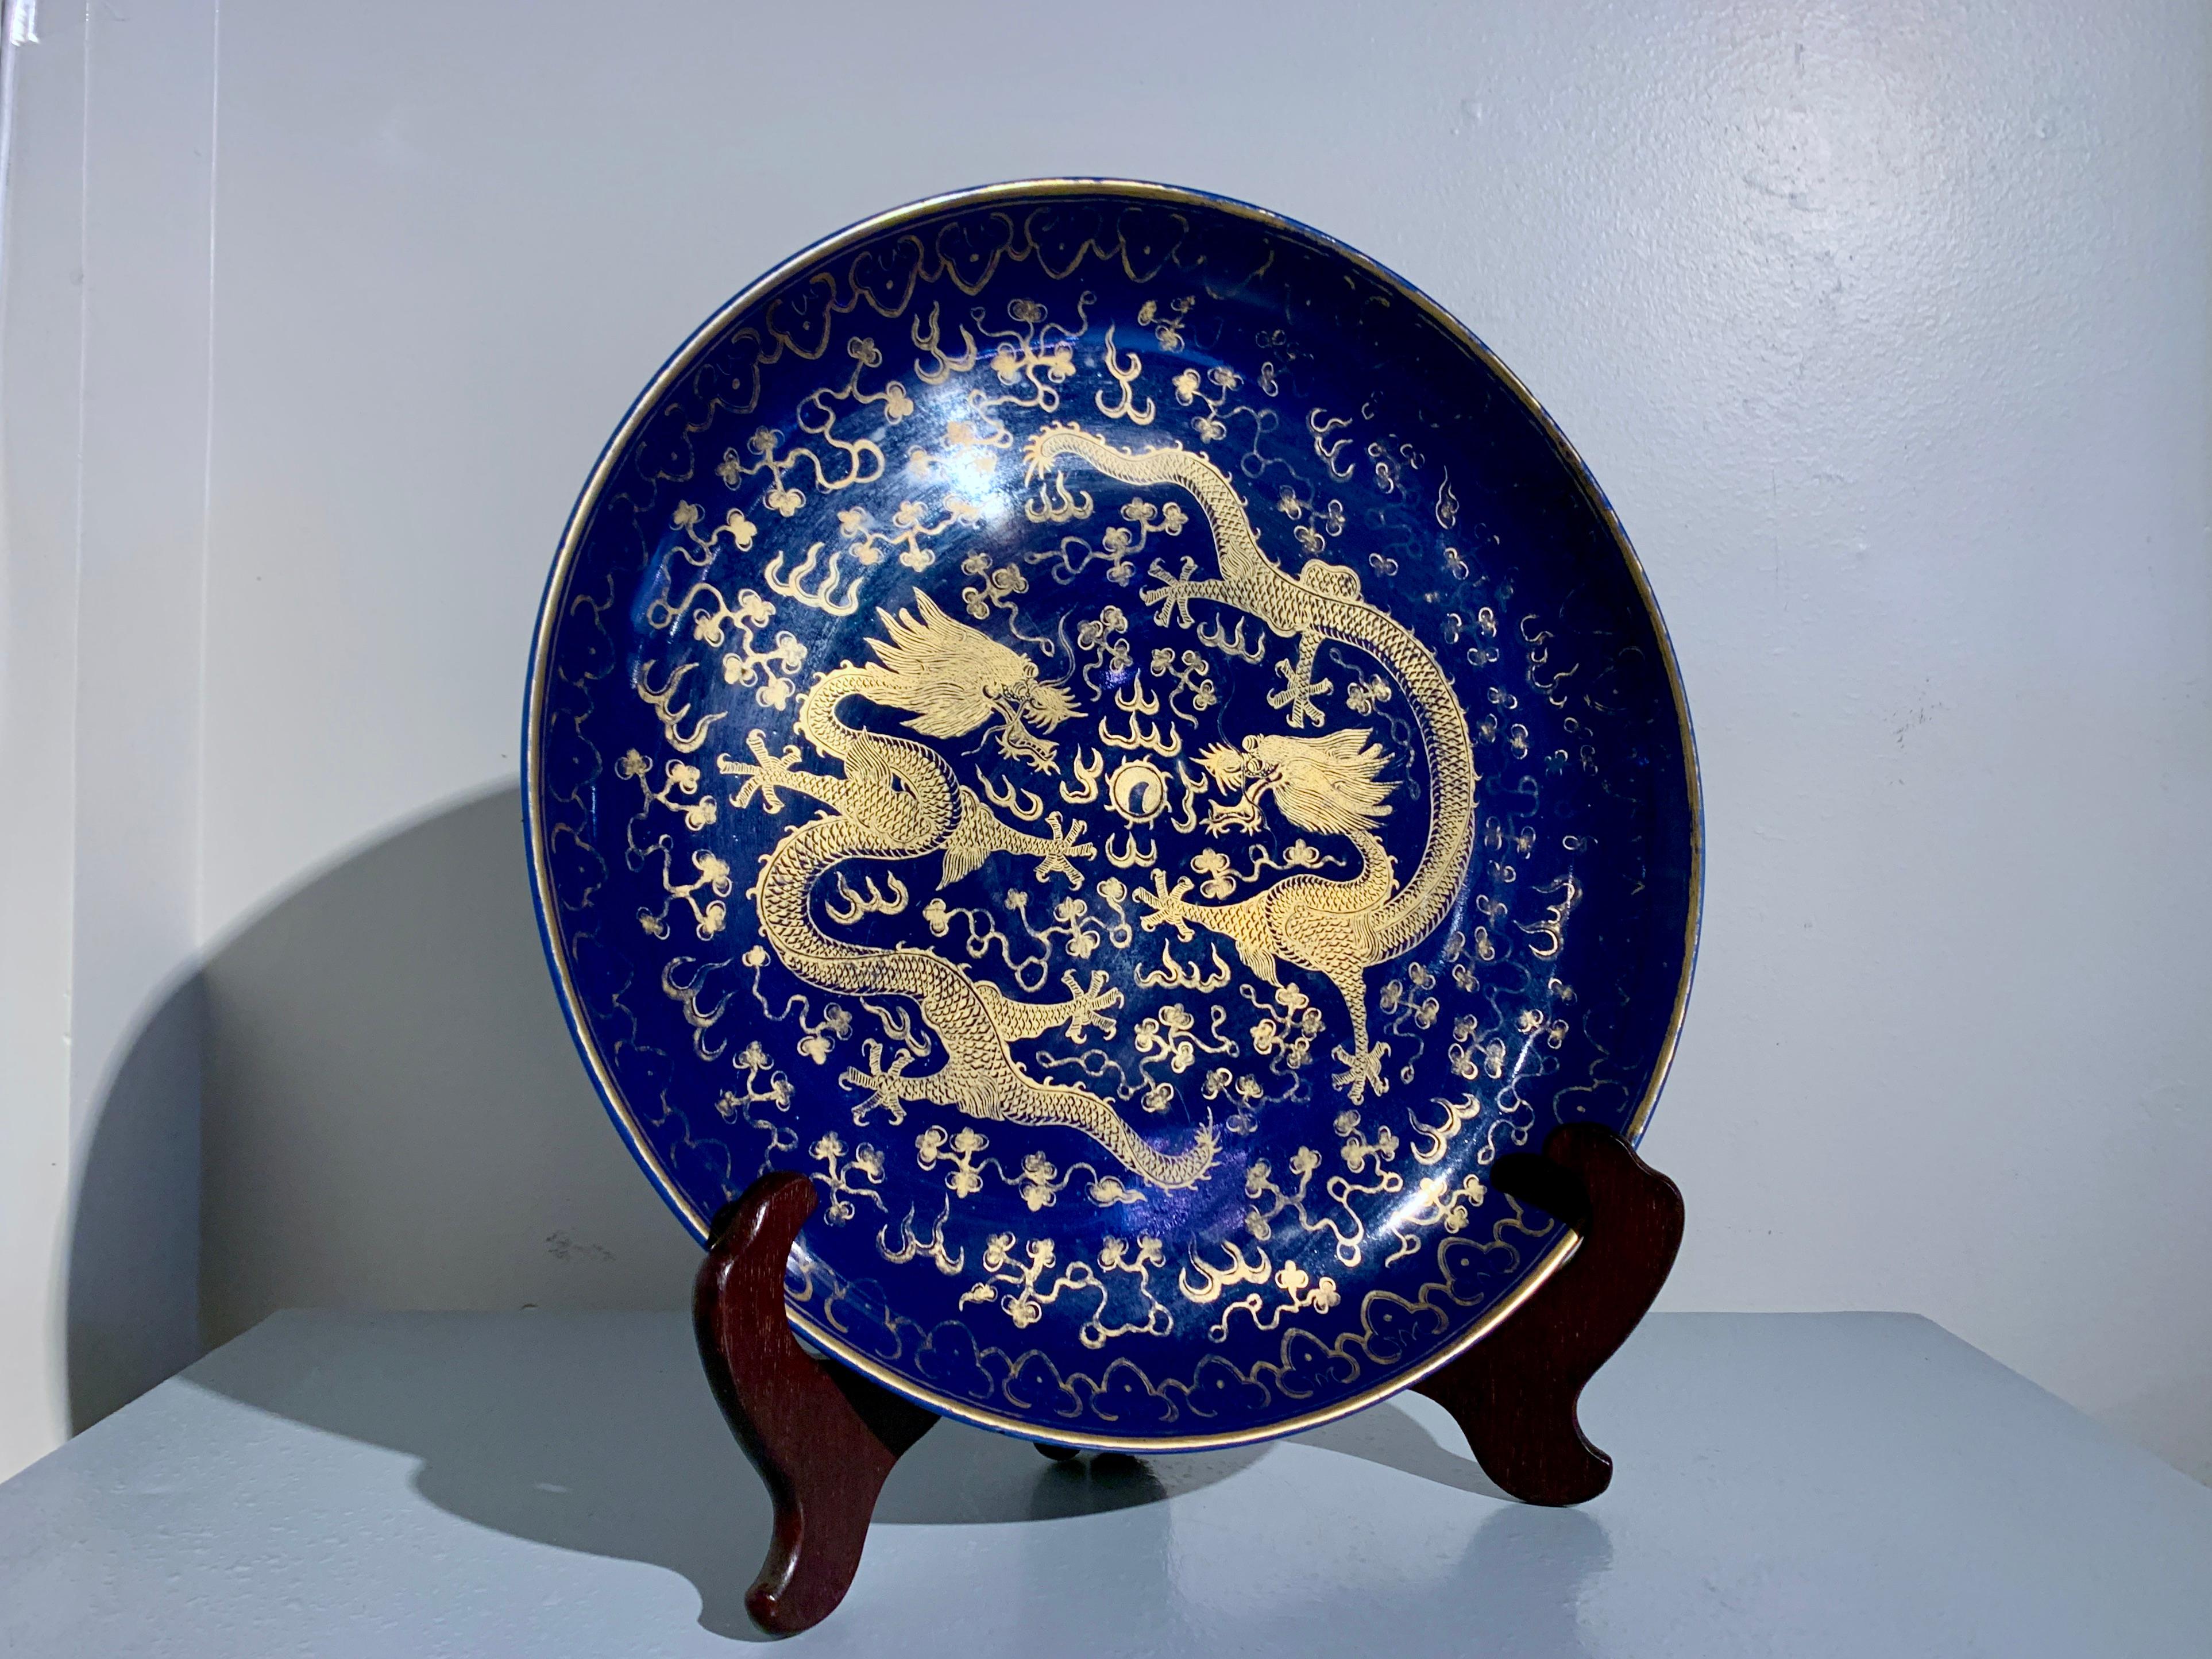 Magnifique chargeur chinois en porcelaine émaillée bleu poudre à décor peint et doré, fin de la dynastie Qing, vers 1900, Chine.

Ce grand et impressionnant chargeur en porcelaine chinoise est émaillé d'un riche et profond bleu cobalt, connu sous le